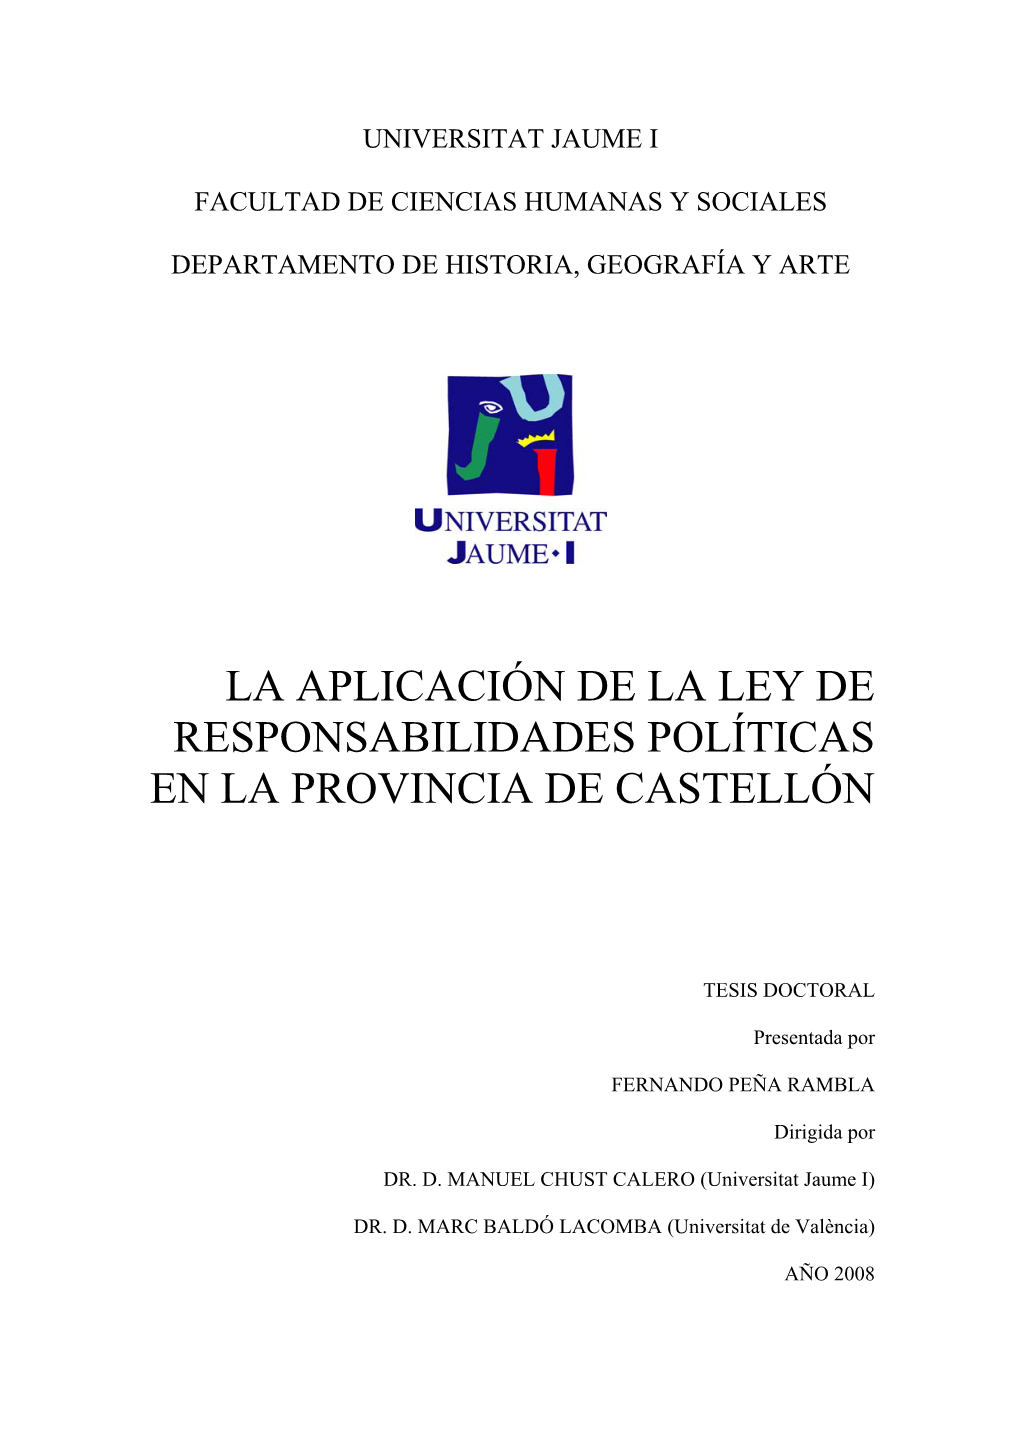 La Aplicación De La Ley De Responsabilidades Políticas En La Provincia De Castellón